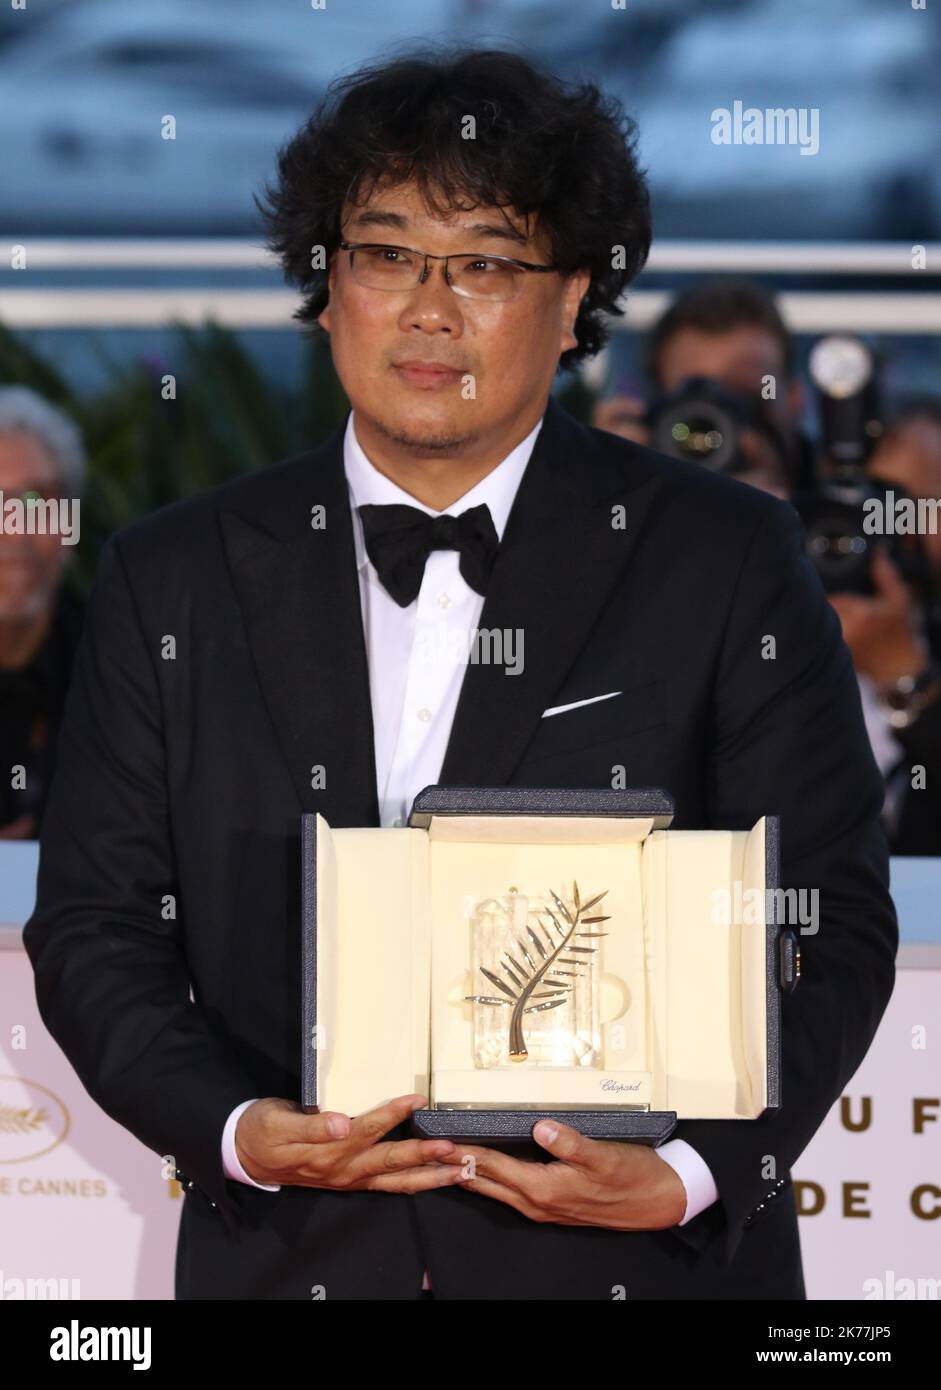 Der südkoreanische Regisseur Bong Joon-Ho posiert während einer Fotozelle mit seiner Trophäe, nachdem er die Palme d'Or für den Film 'Parasite (Gisaengchung)' gewonnen hat. Stockfoto